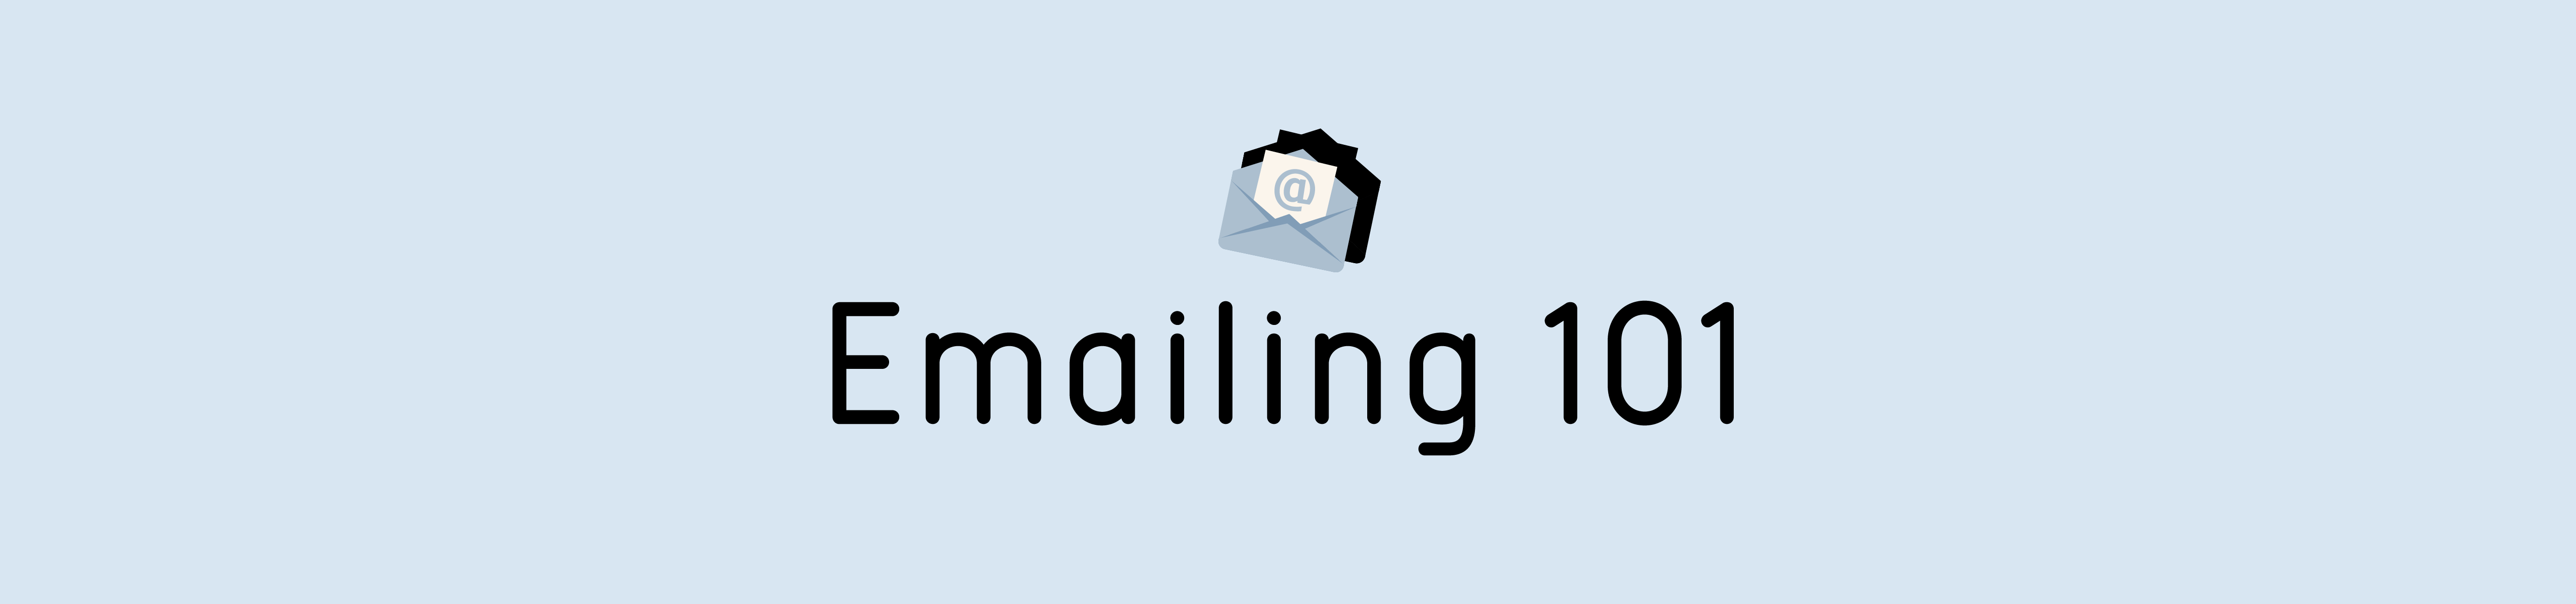 Emailing 101 header